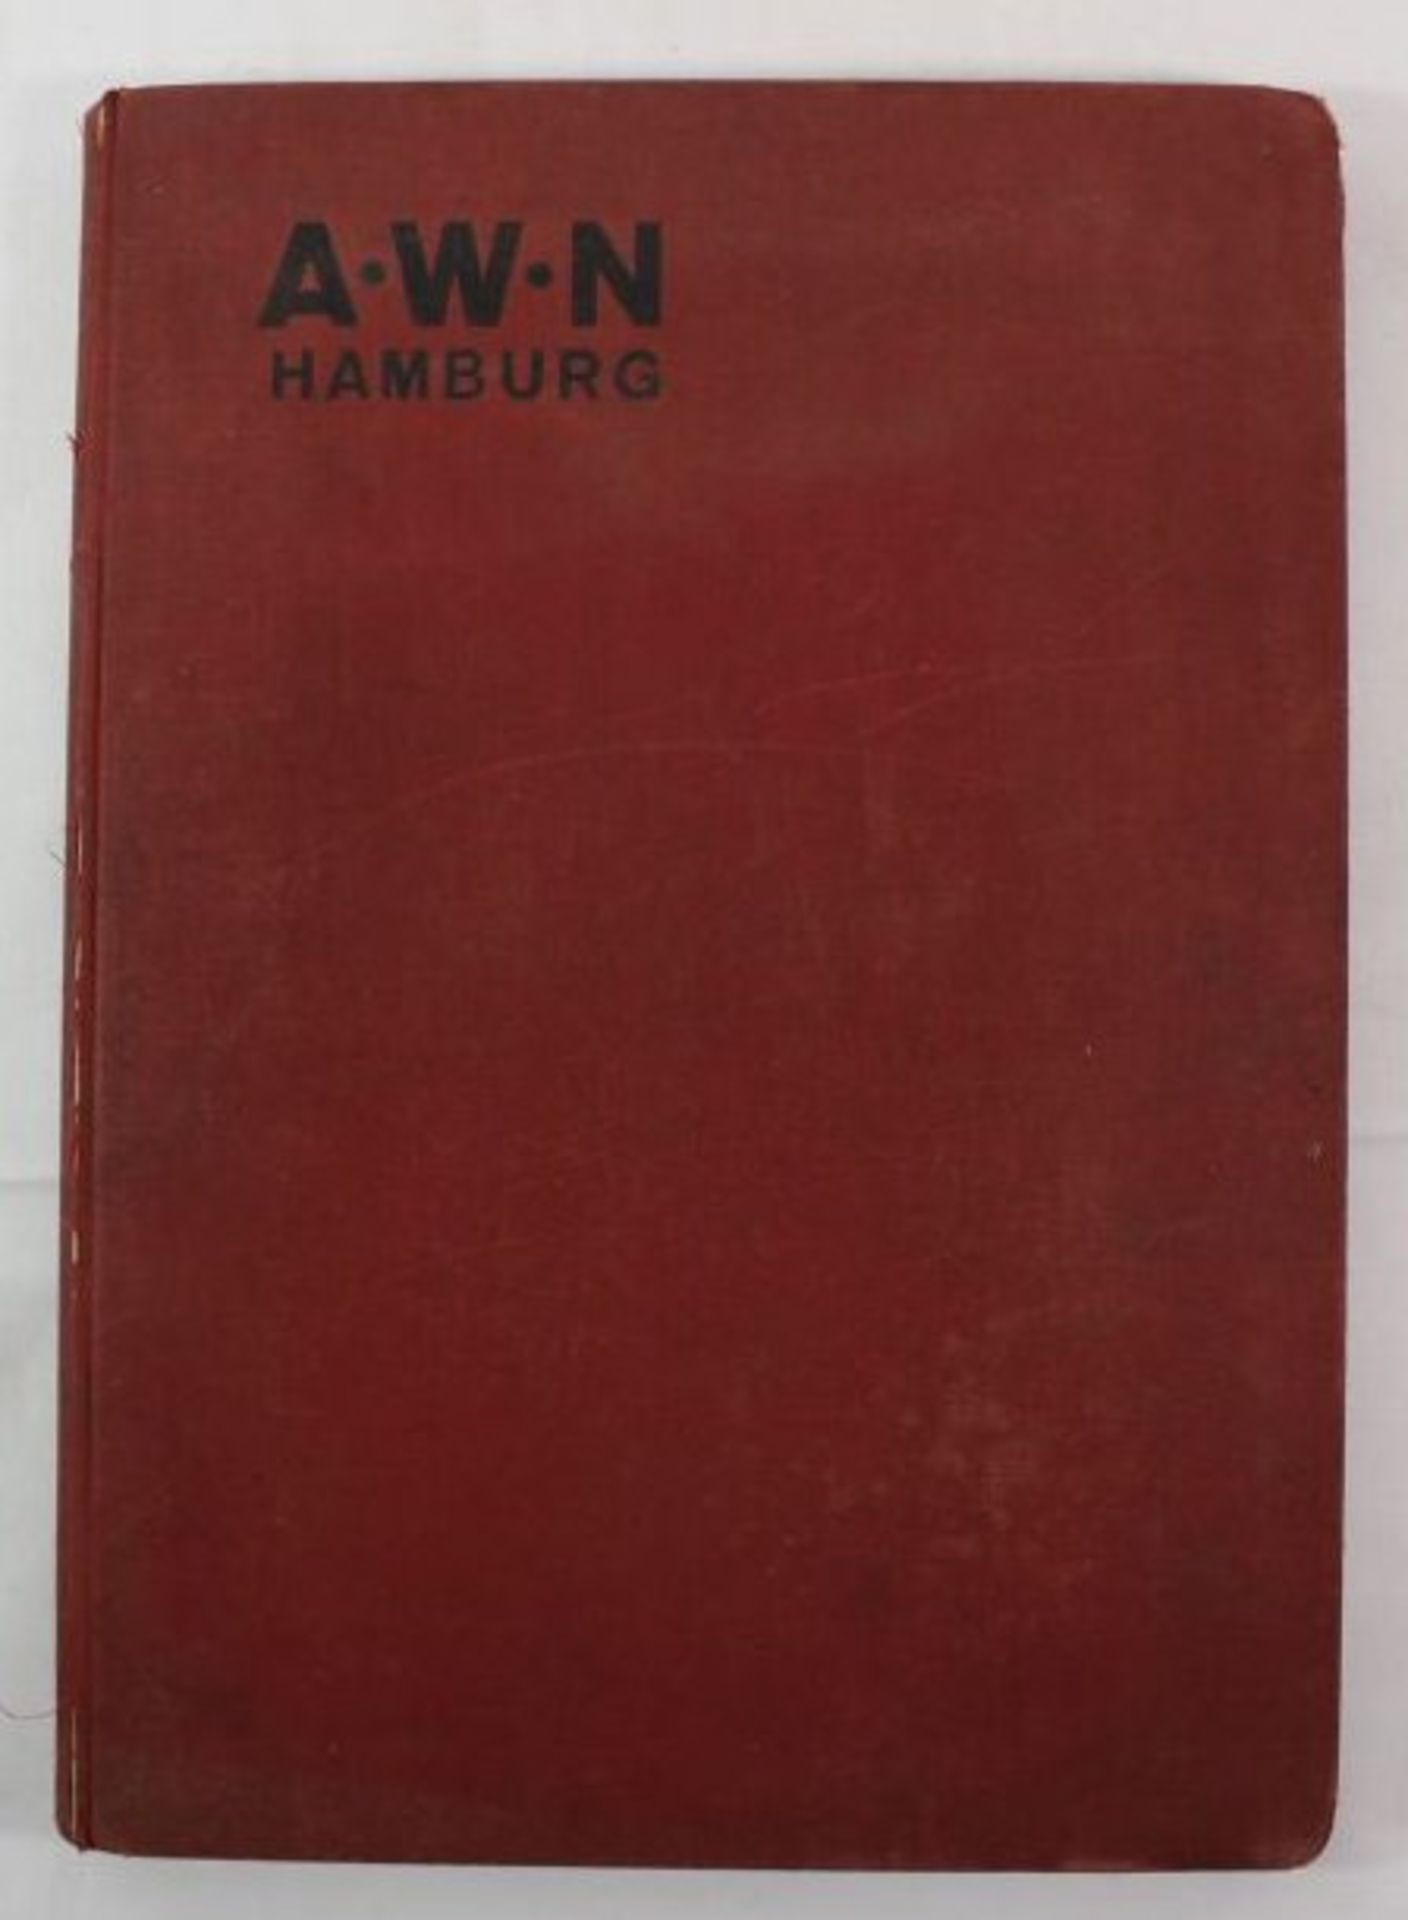 A.W.Niemeyer Hbg. Sonderkatalog über Schiffs-Bedarfsartikel Beschläge Eisenwaren, Nr. 3004, o.J.,